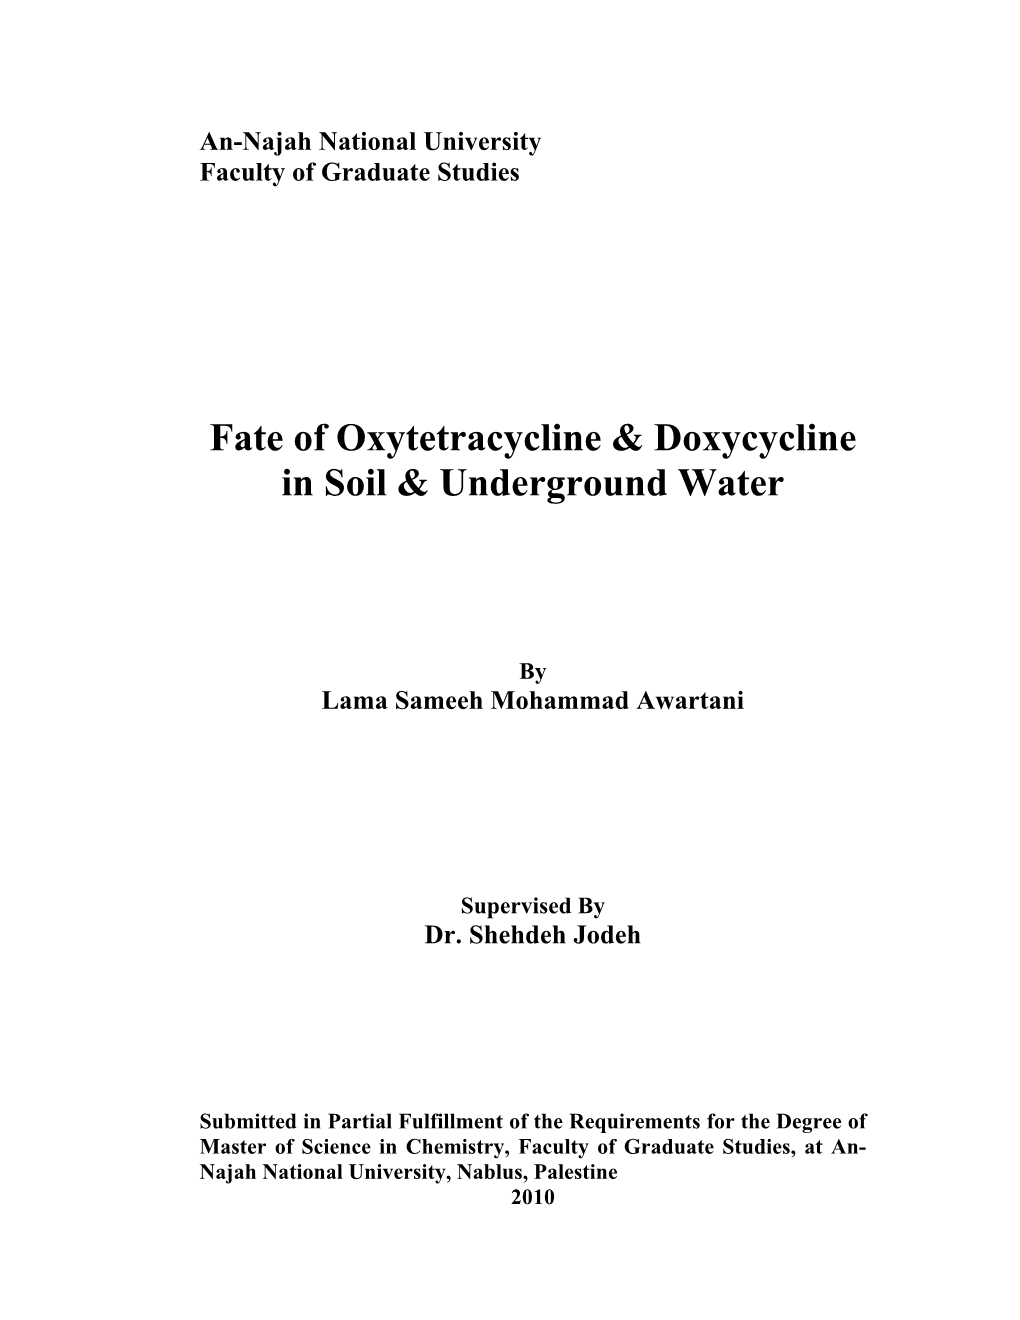 Fate of Oxytetracycline & Doxycycline in Soil & Underground Water